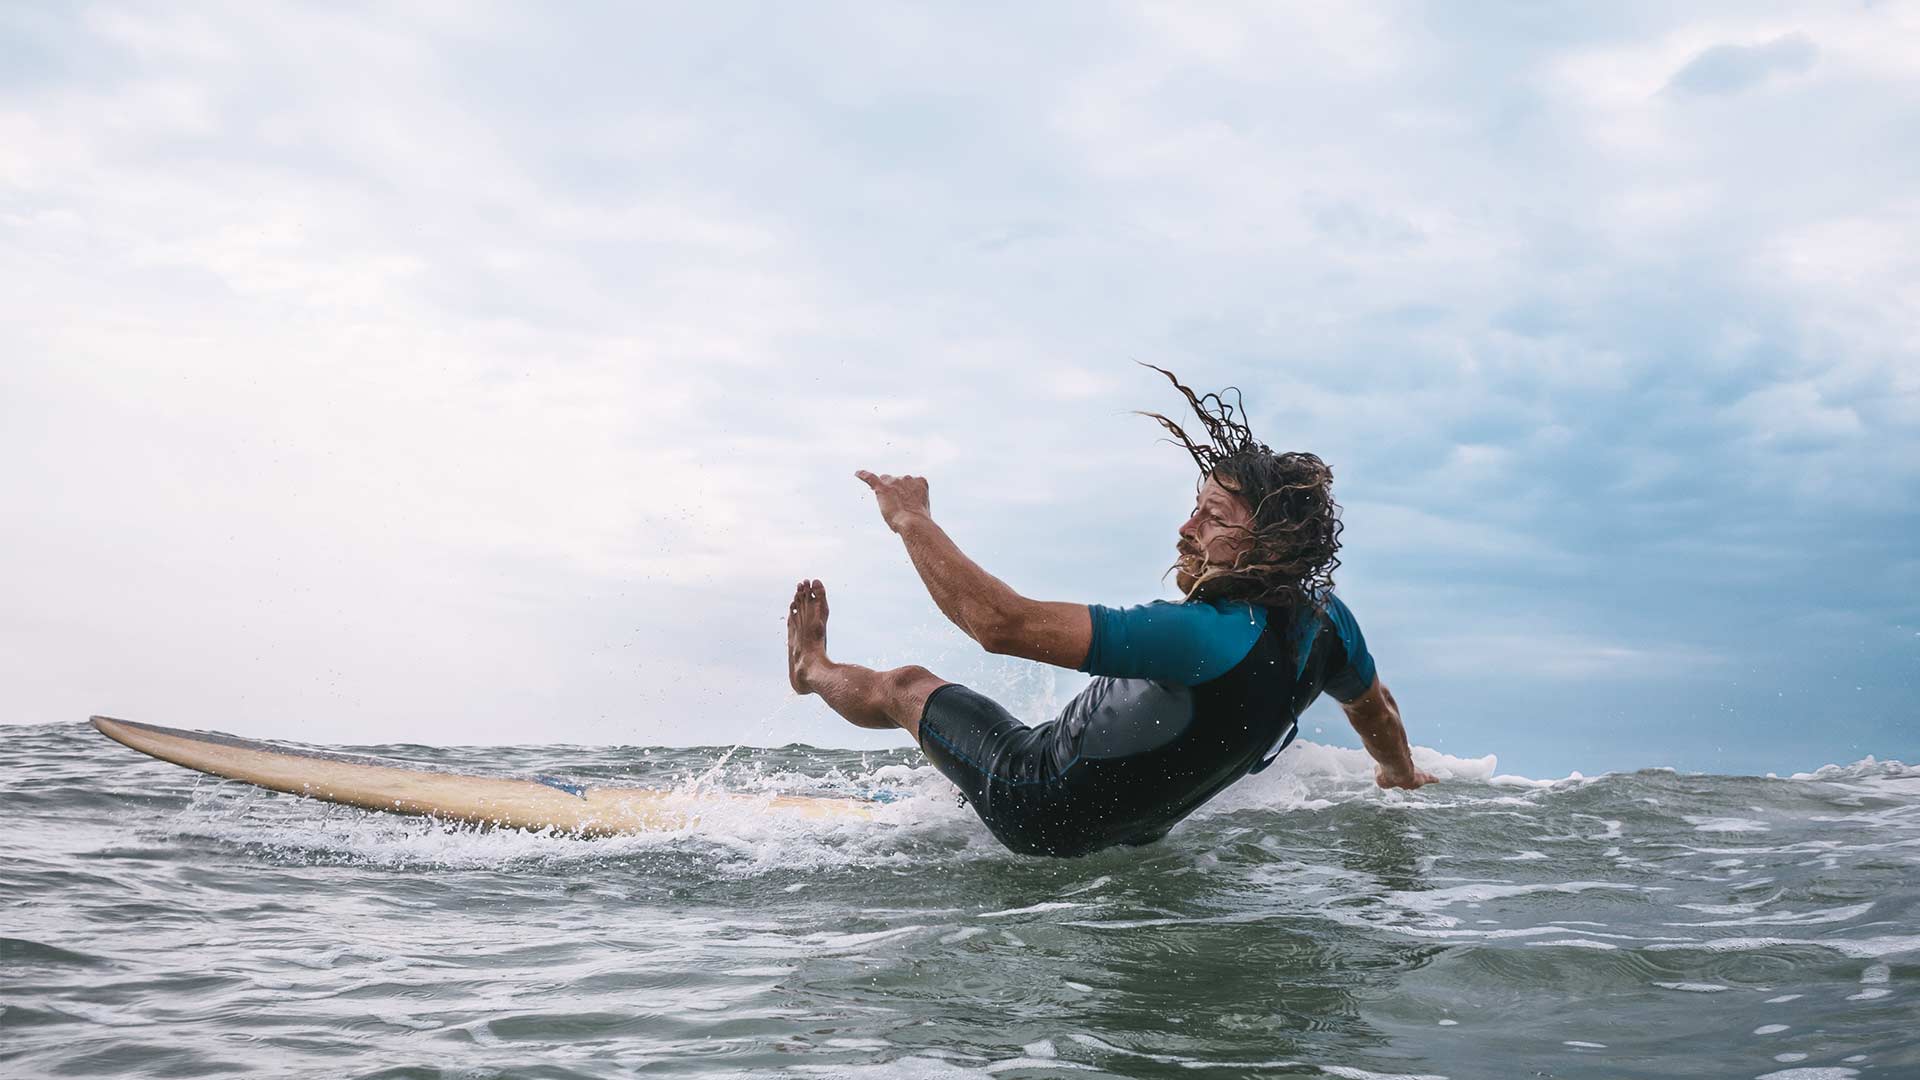 Mann in Neoprenanzug und langen Haaren stürzt beim Wellenreiten vom Surfbrett